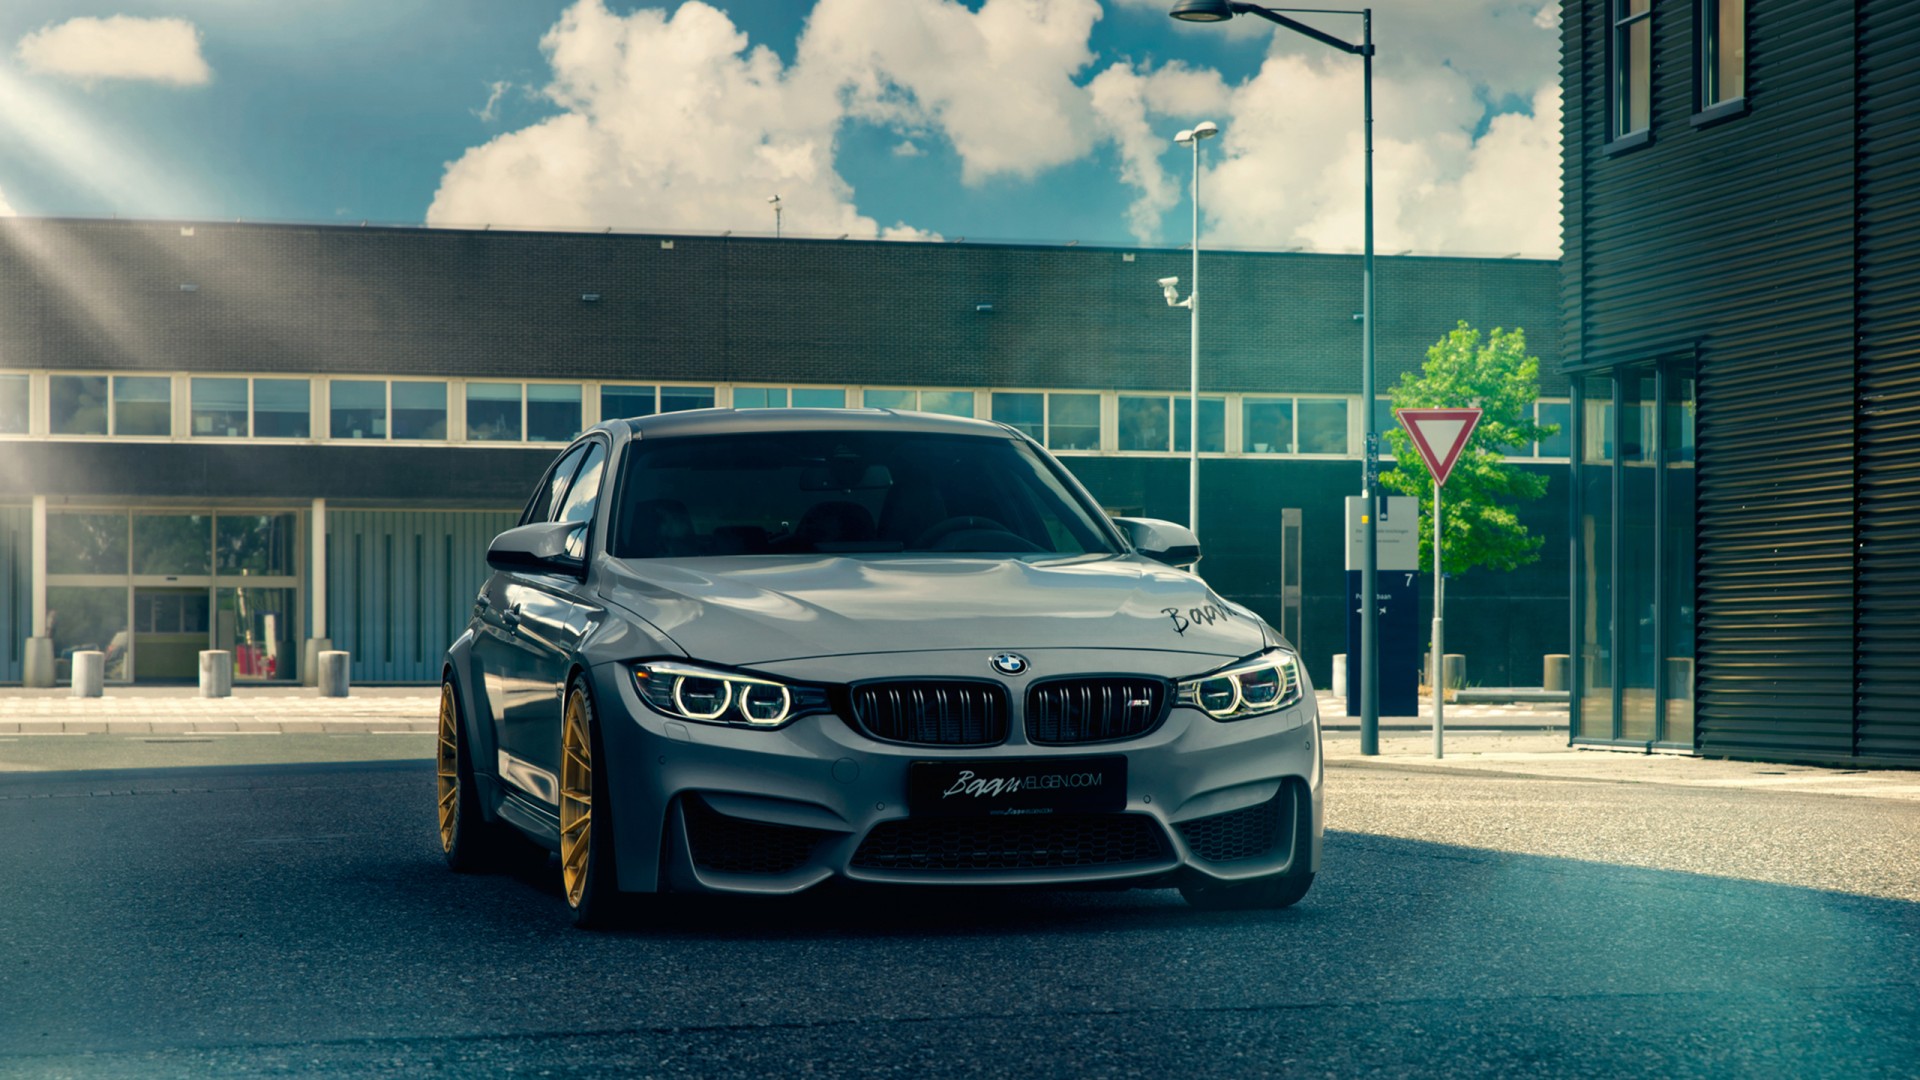 BMW F80 M3 Wallpaper | HD Car Wallpapers | ID #13036